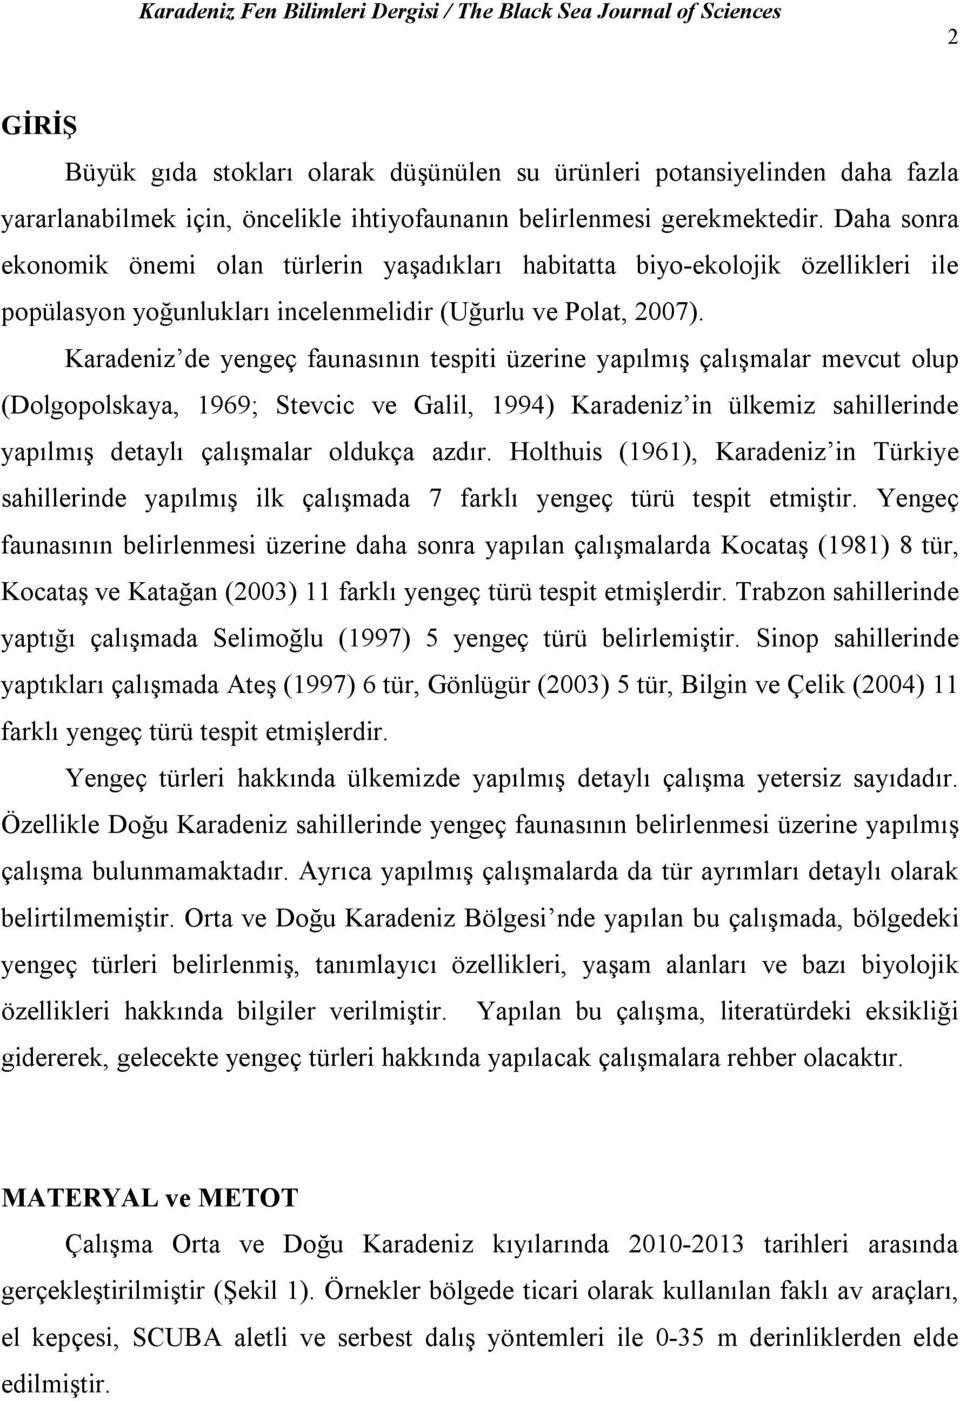 Karadeniz de yengeç faunasının tespiti üzerine yapılmış çalışmalar mevcut olup (Dolgopolskaya, 1969; Stevcic ve Galil, 1994) Karadeniz in ülkemiz sahillerinde yapılmış detaylı çalışmalar oldukça